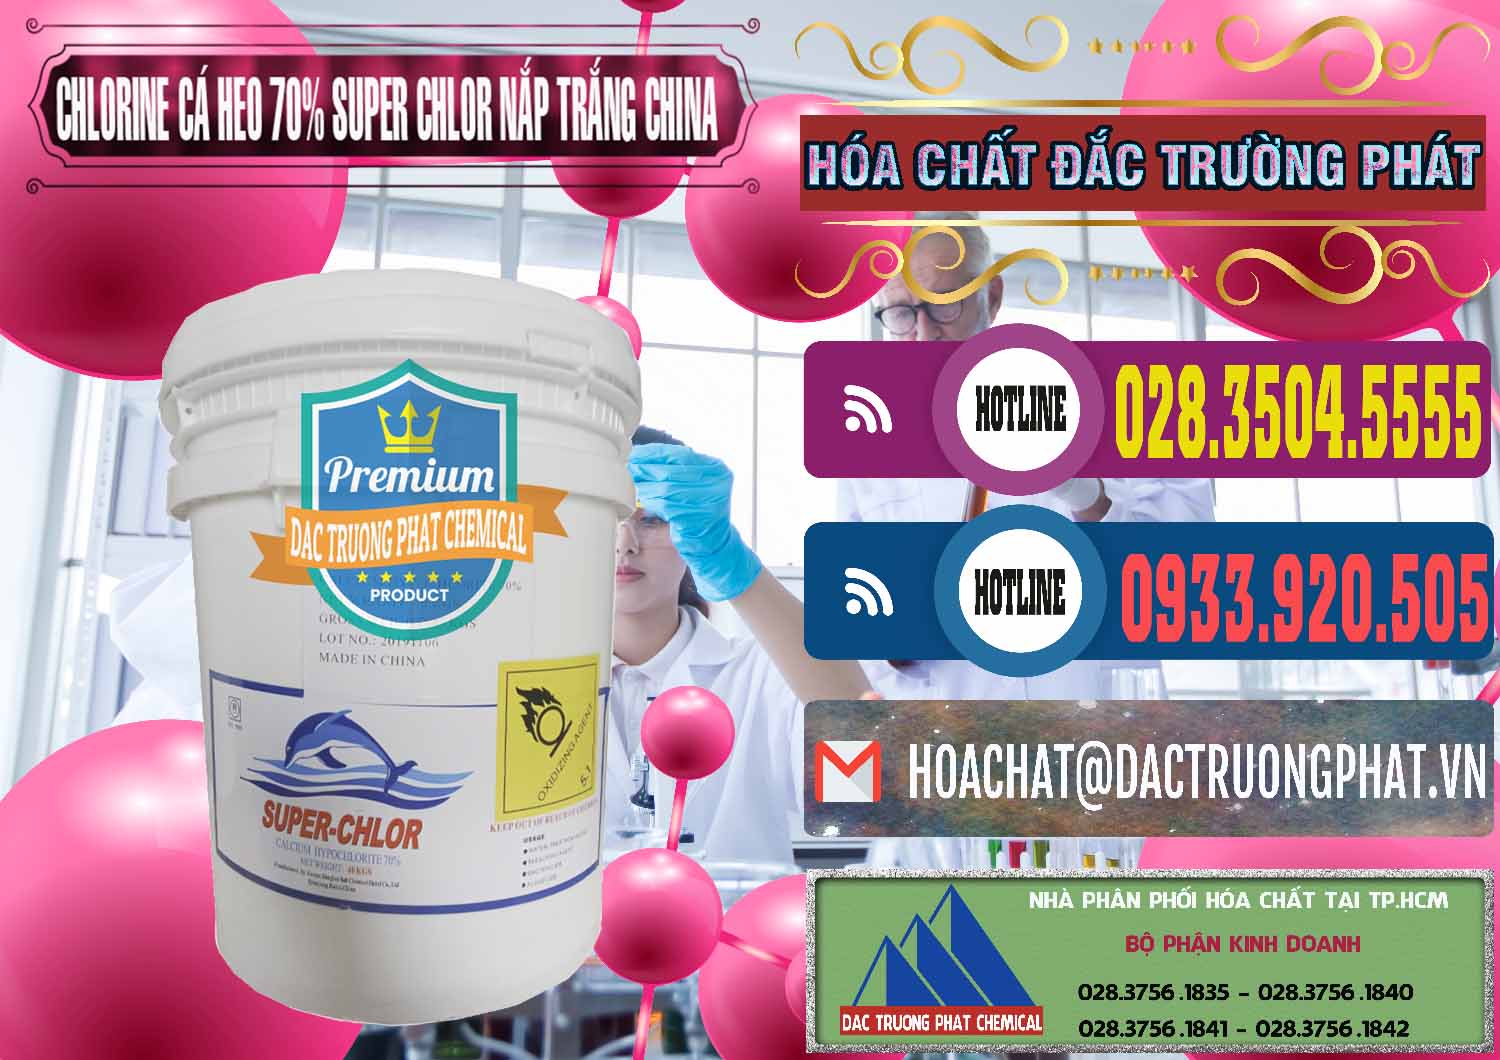 Cty chuyên cung cấp _ bán Clorin - Chlorine Cá Heo 70% Super Chlor Nắp Trắng Trung Quốc China - 0240 - Đơn vị phân phối và cung cấp hóa chất tại TP.HCM - muabanhoachat.com.vn